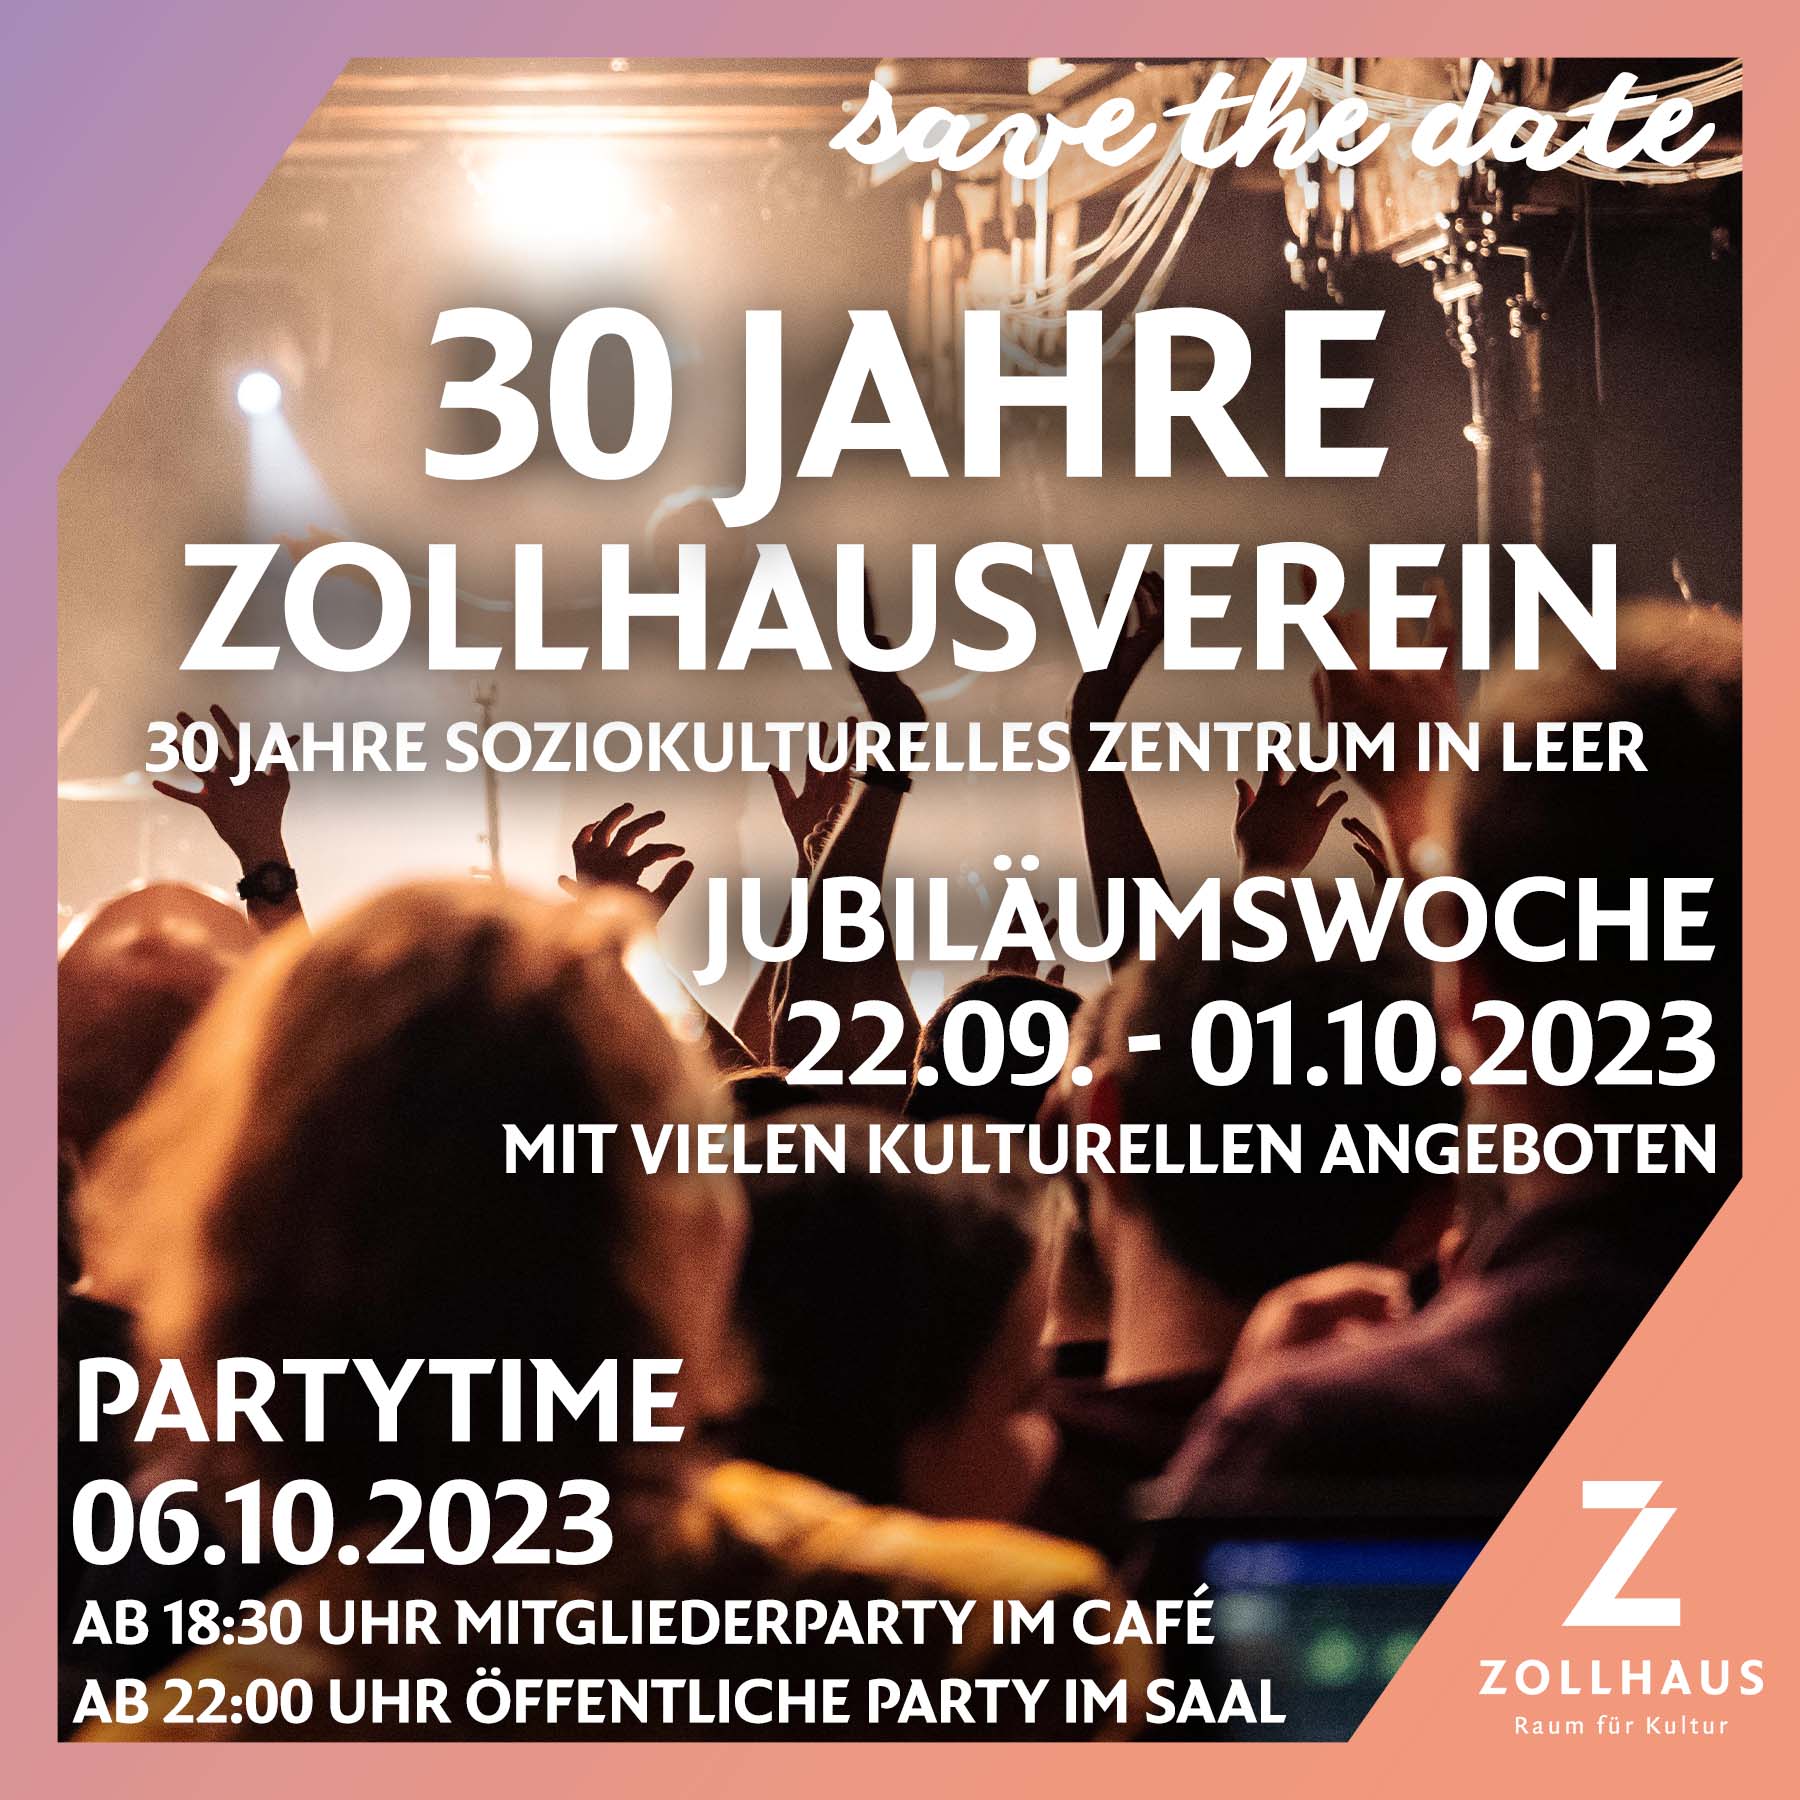 SAVE THE DATE – 30 Jahre Zollhausverein